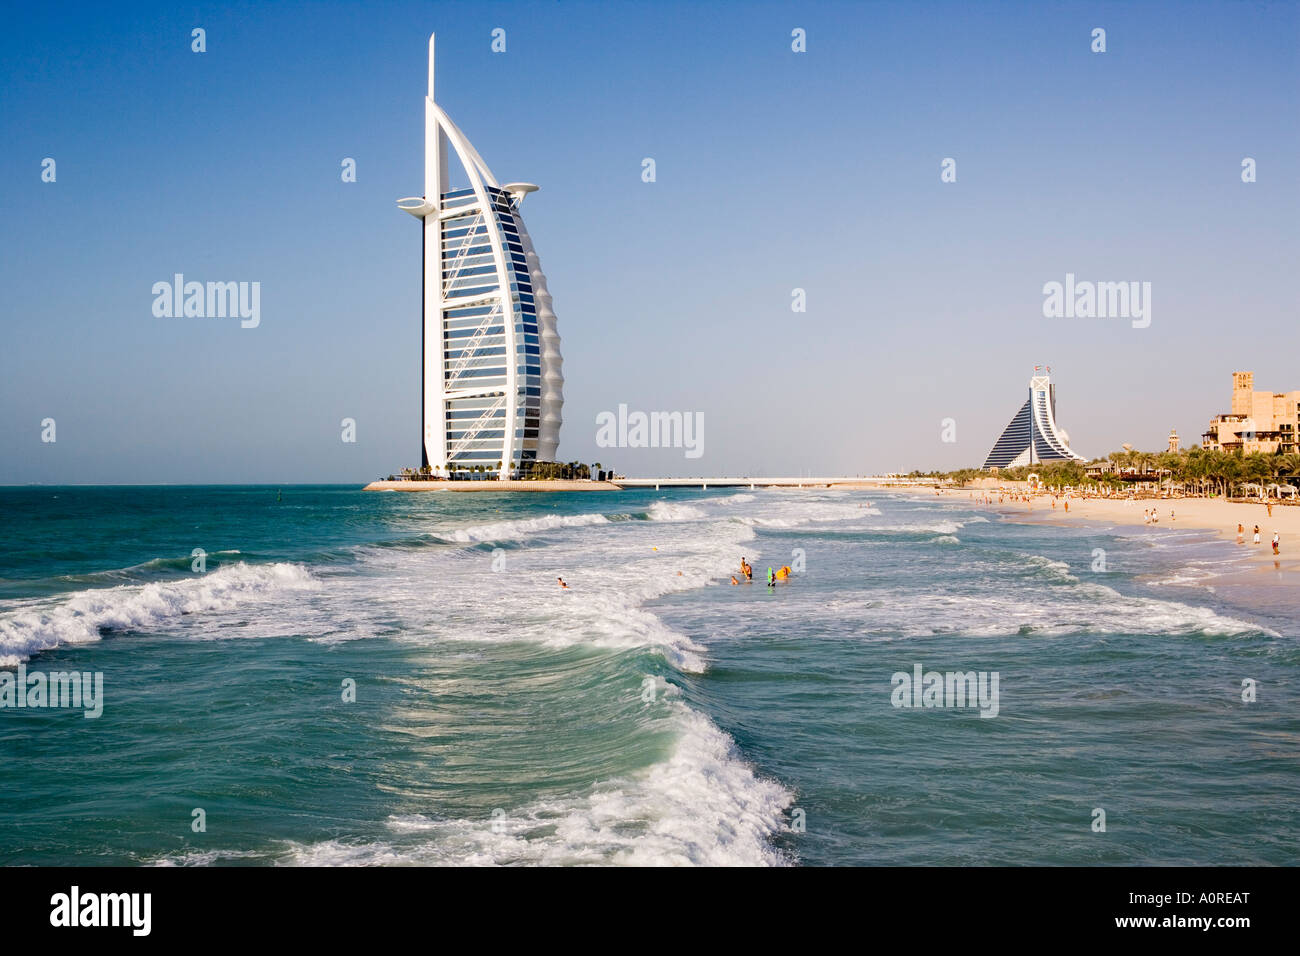 L'établissement emblématique de Dubaï Burj Al Arab le premier hôtel 7 étoiles classé 5* construit sur un Banque D'Images